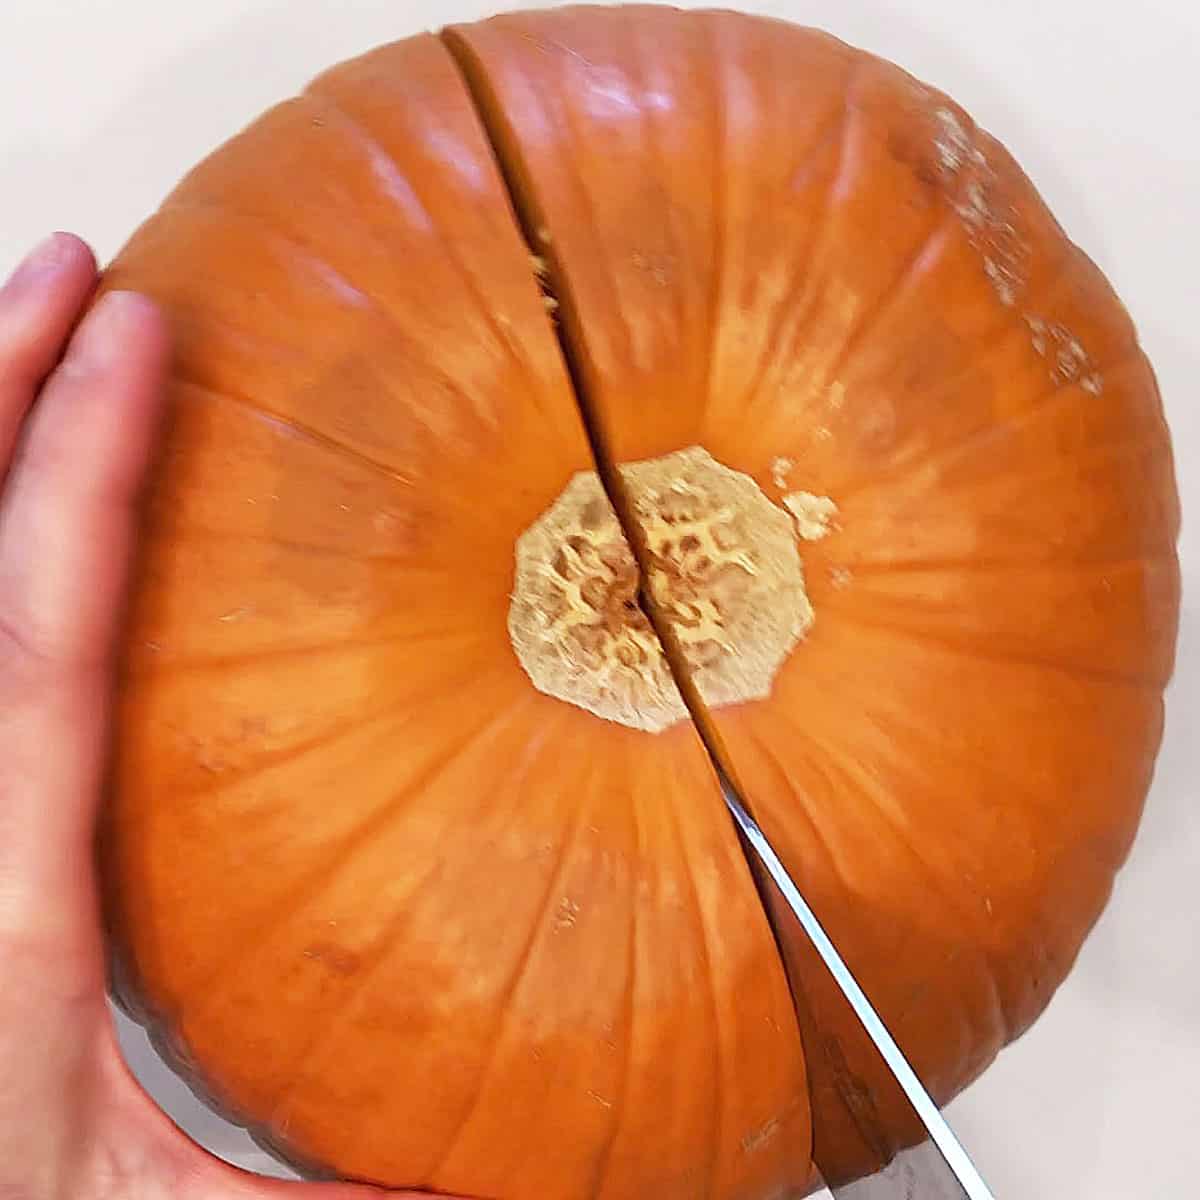 Cut the pumpkin in half. 